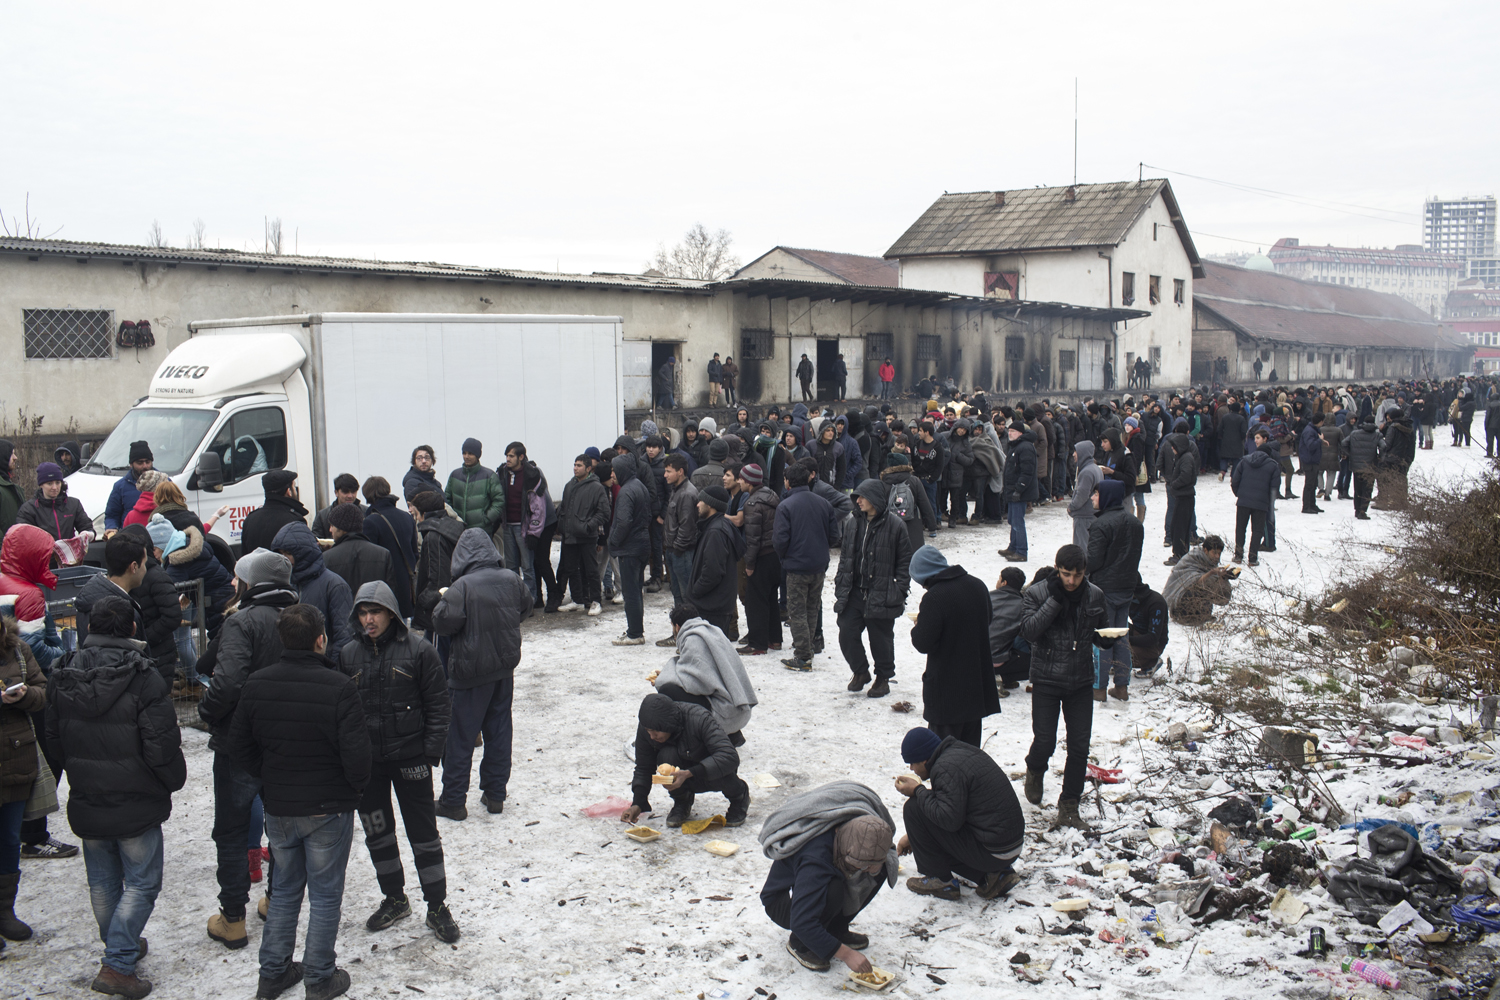 El pasado fin de semana, el termómetro bajó hasta los 16 grados bajo cero en Belgrado, donde el número de refugiados alcanzó los 2.000.